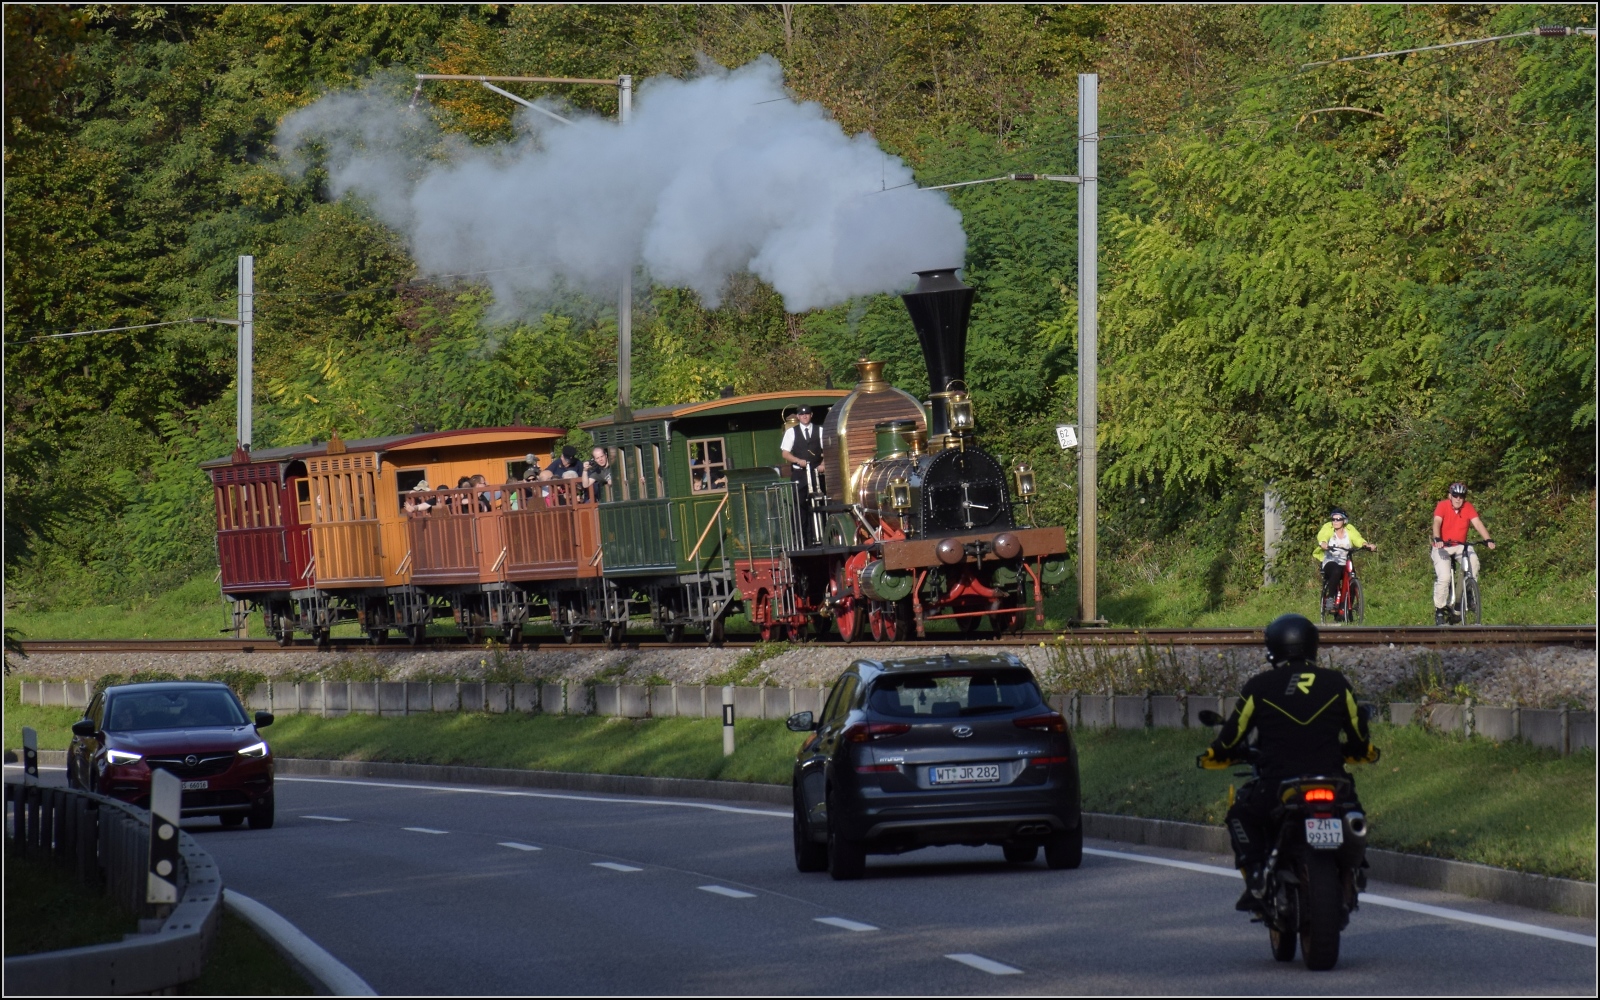 Zum 175-Jährigen hat die SBB Historic die Spanisch Brötli-Bahn ausgepackt.

Bei Rheinsulz erreicht die Abendsonne die Spanisch Brötli Bahn von der Rheinseite, während sich einige Verkehrsteilnehmer über die ungewöhnliche Begegnung wundern. Oktober 2022
